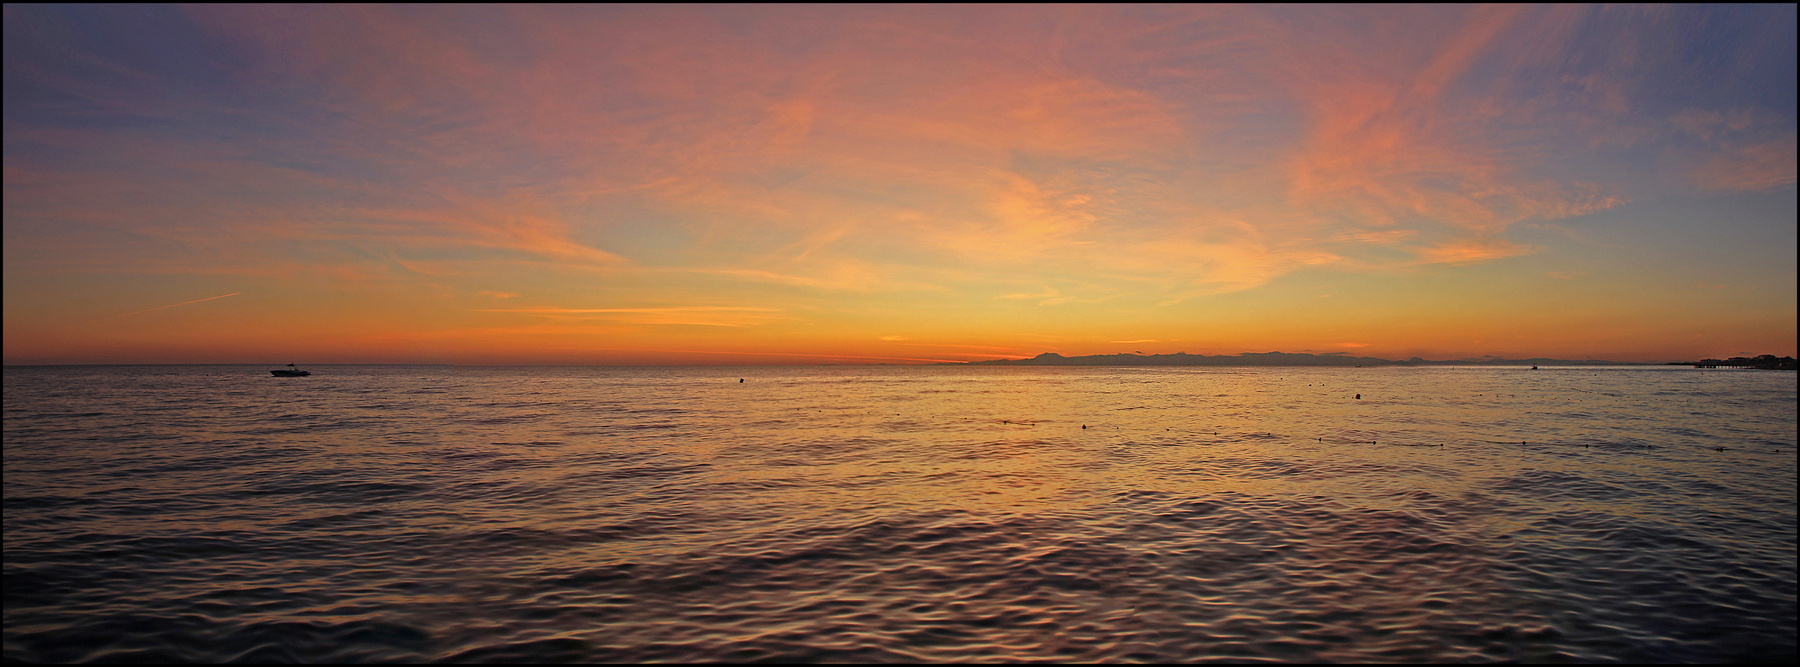 После заката... Турция Средиземное море Аланья вечер морской пейзаж после заката краски неба